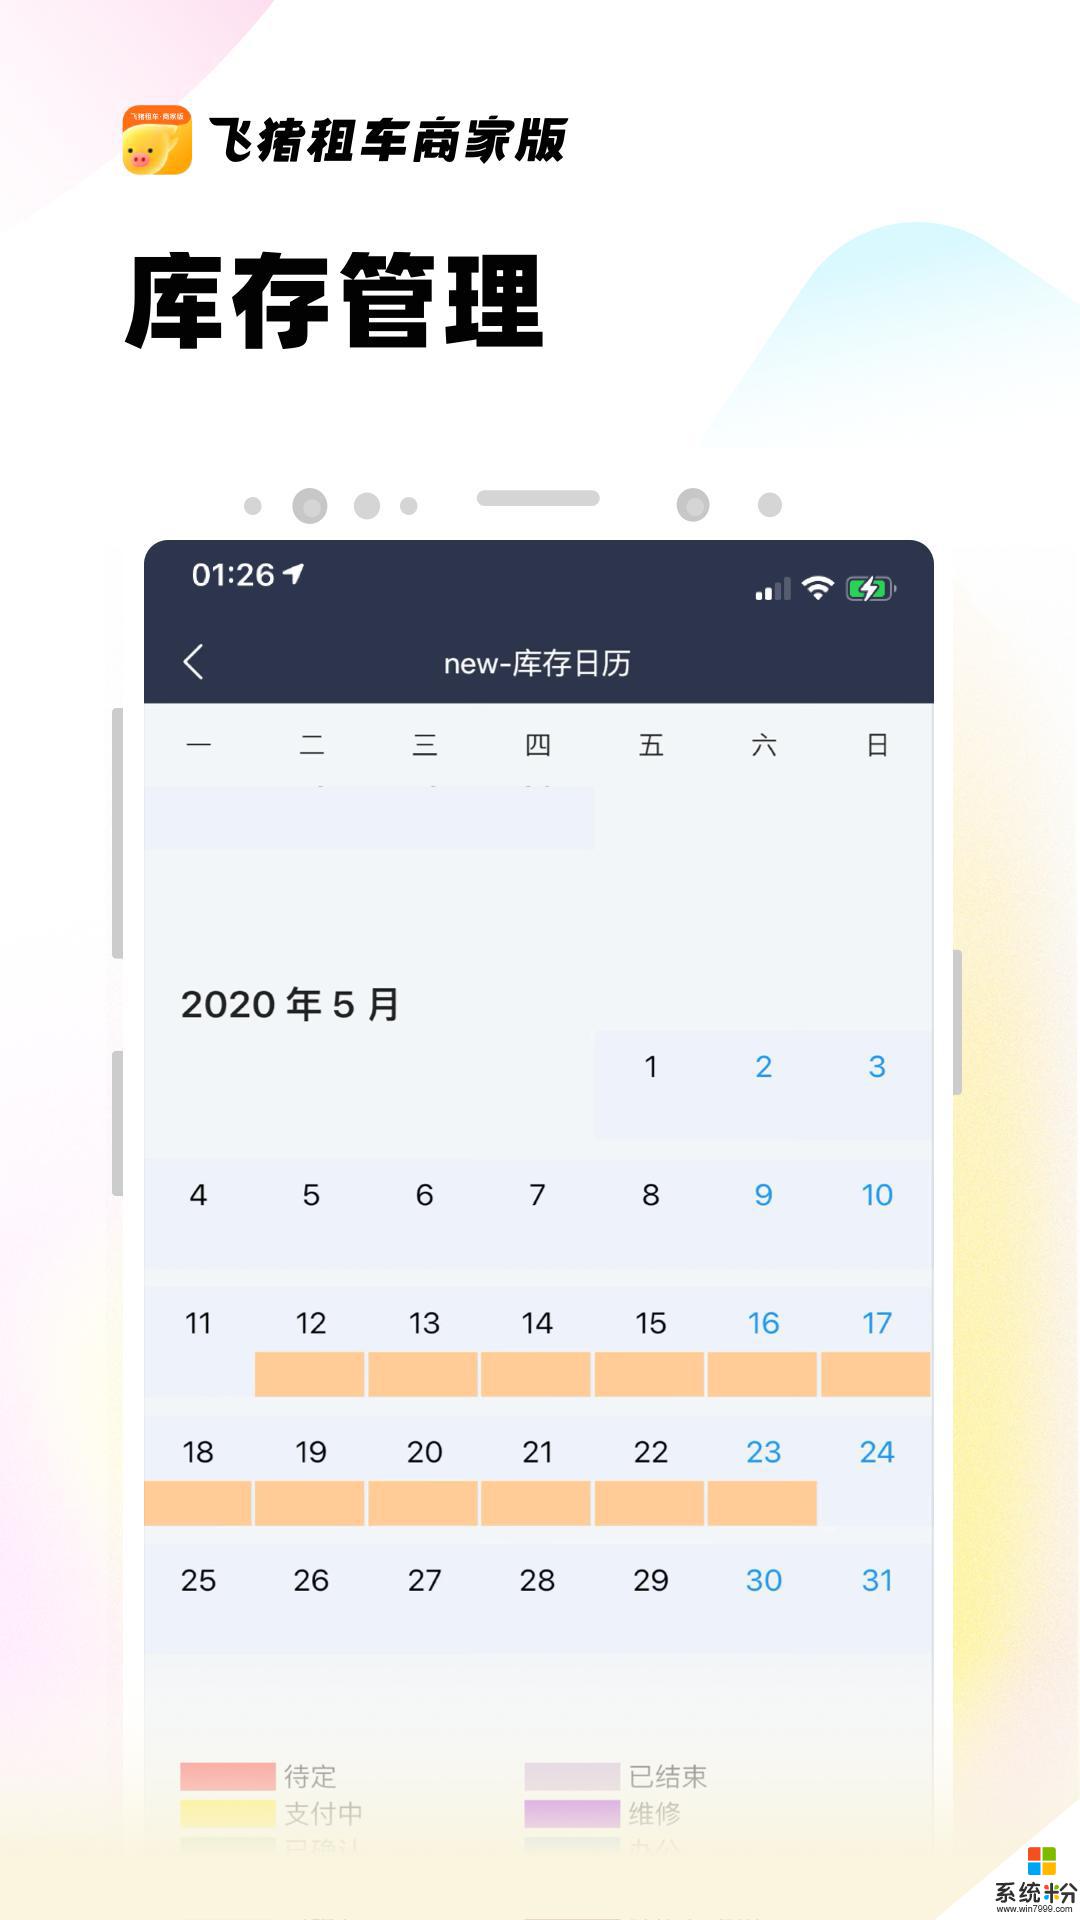 飞猪租车商家版下载app安卓最新版